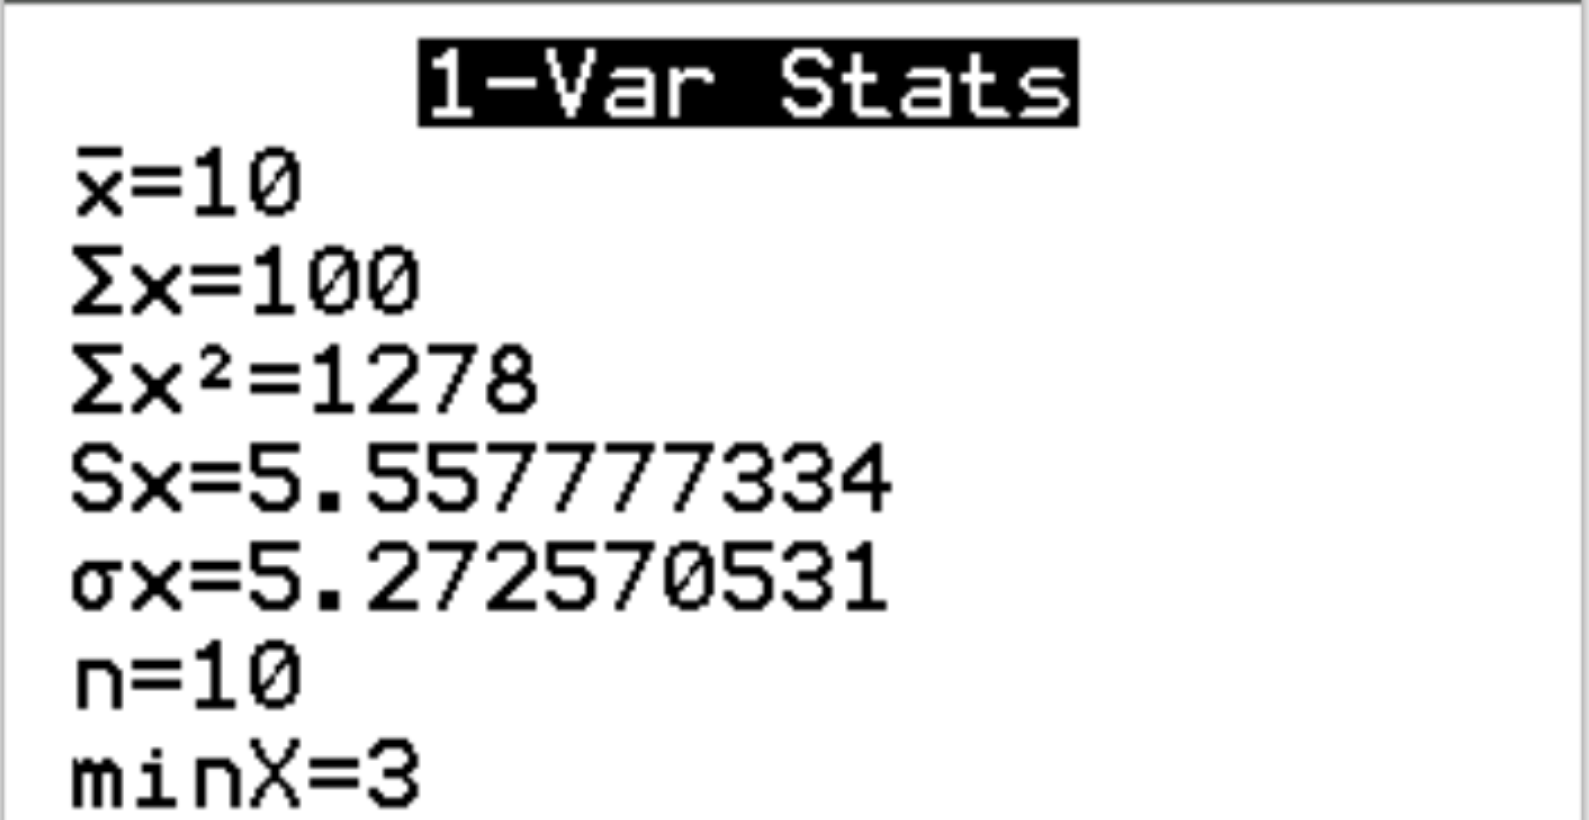 Gerando estatísticas de 1 Var em uma calculadora TI-84